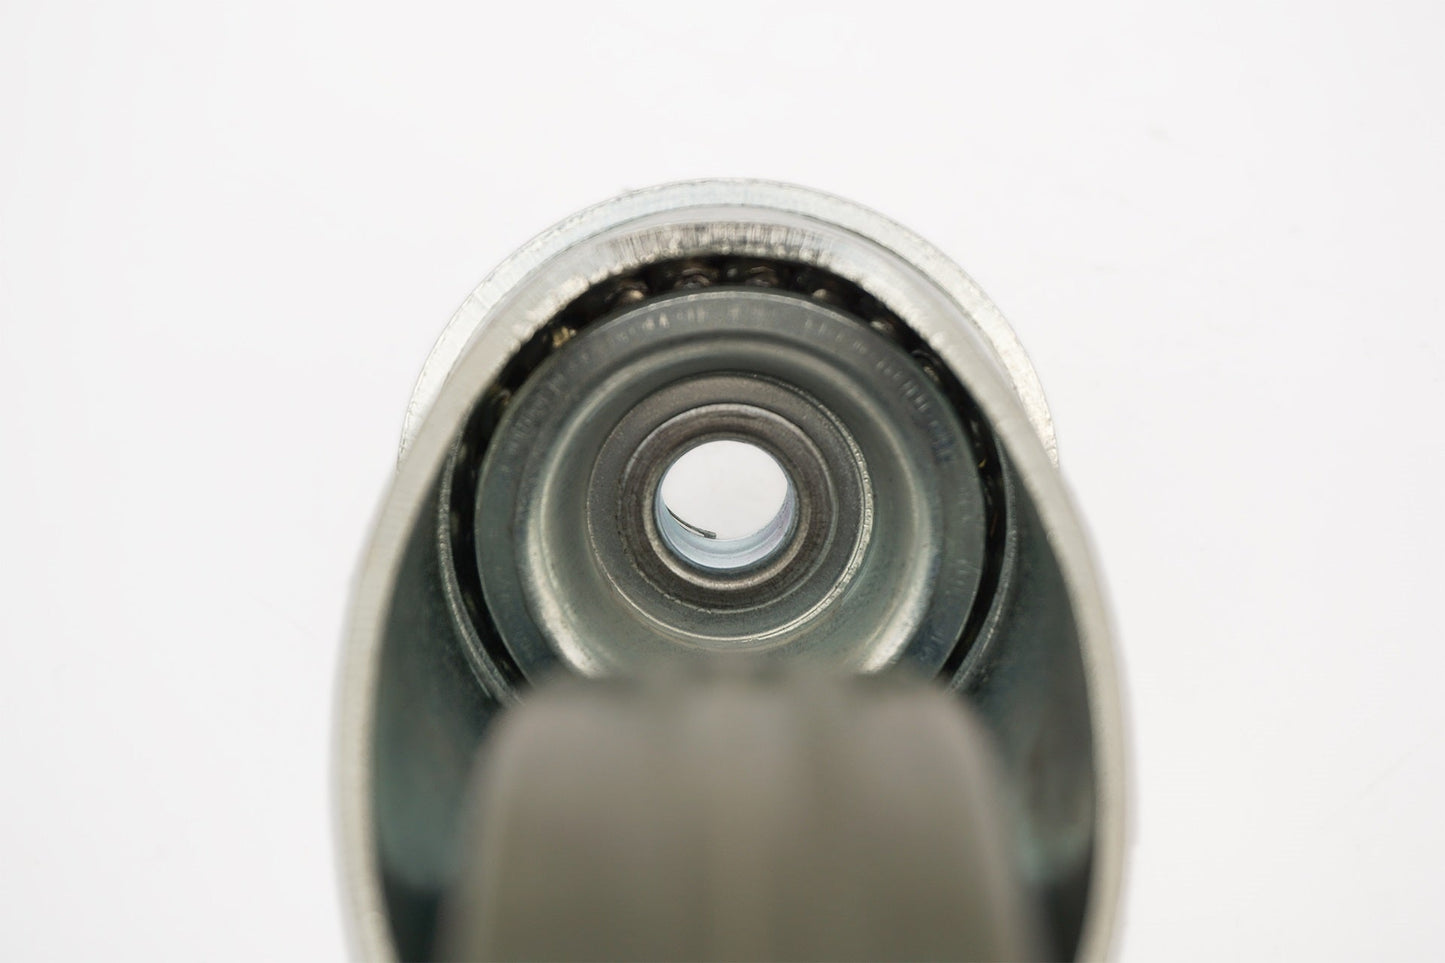 4x zestaw kołowy Ø 125 mm (2x skrętny, 2x skrętny z hamulcem), guma niebrudząca szara, łożysko ślizgowe | 3056/3057-125 - łożysko z kulkami